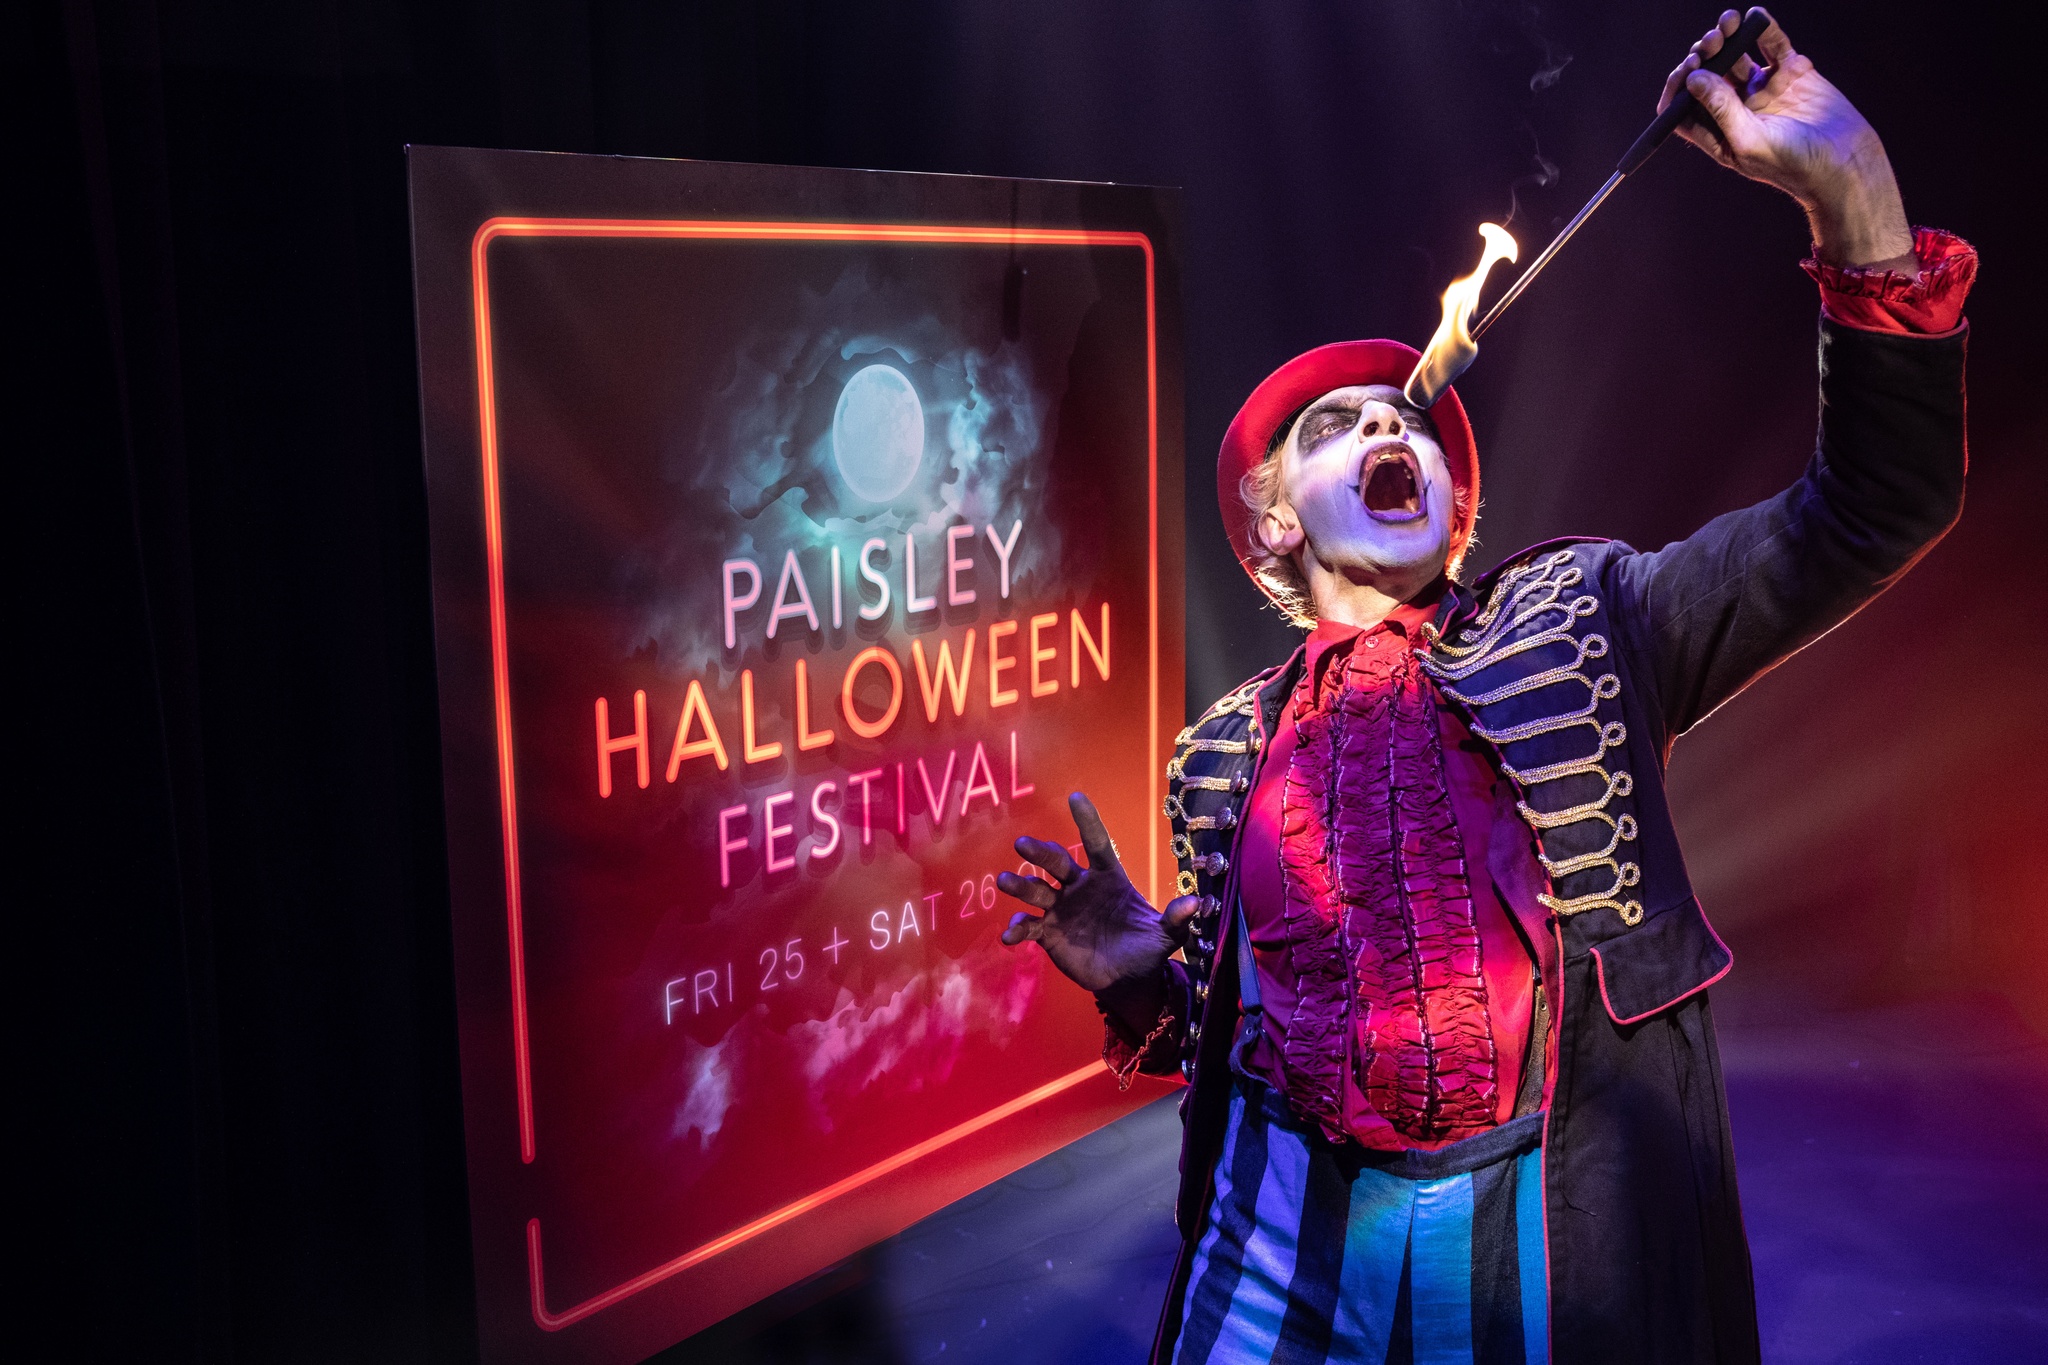 A creepy circus showman at the Paisley Halloween Parade.